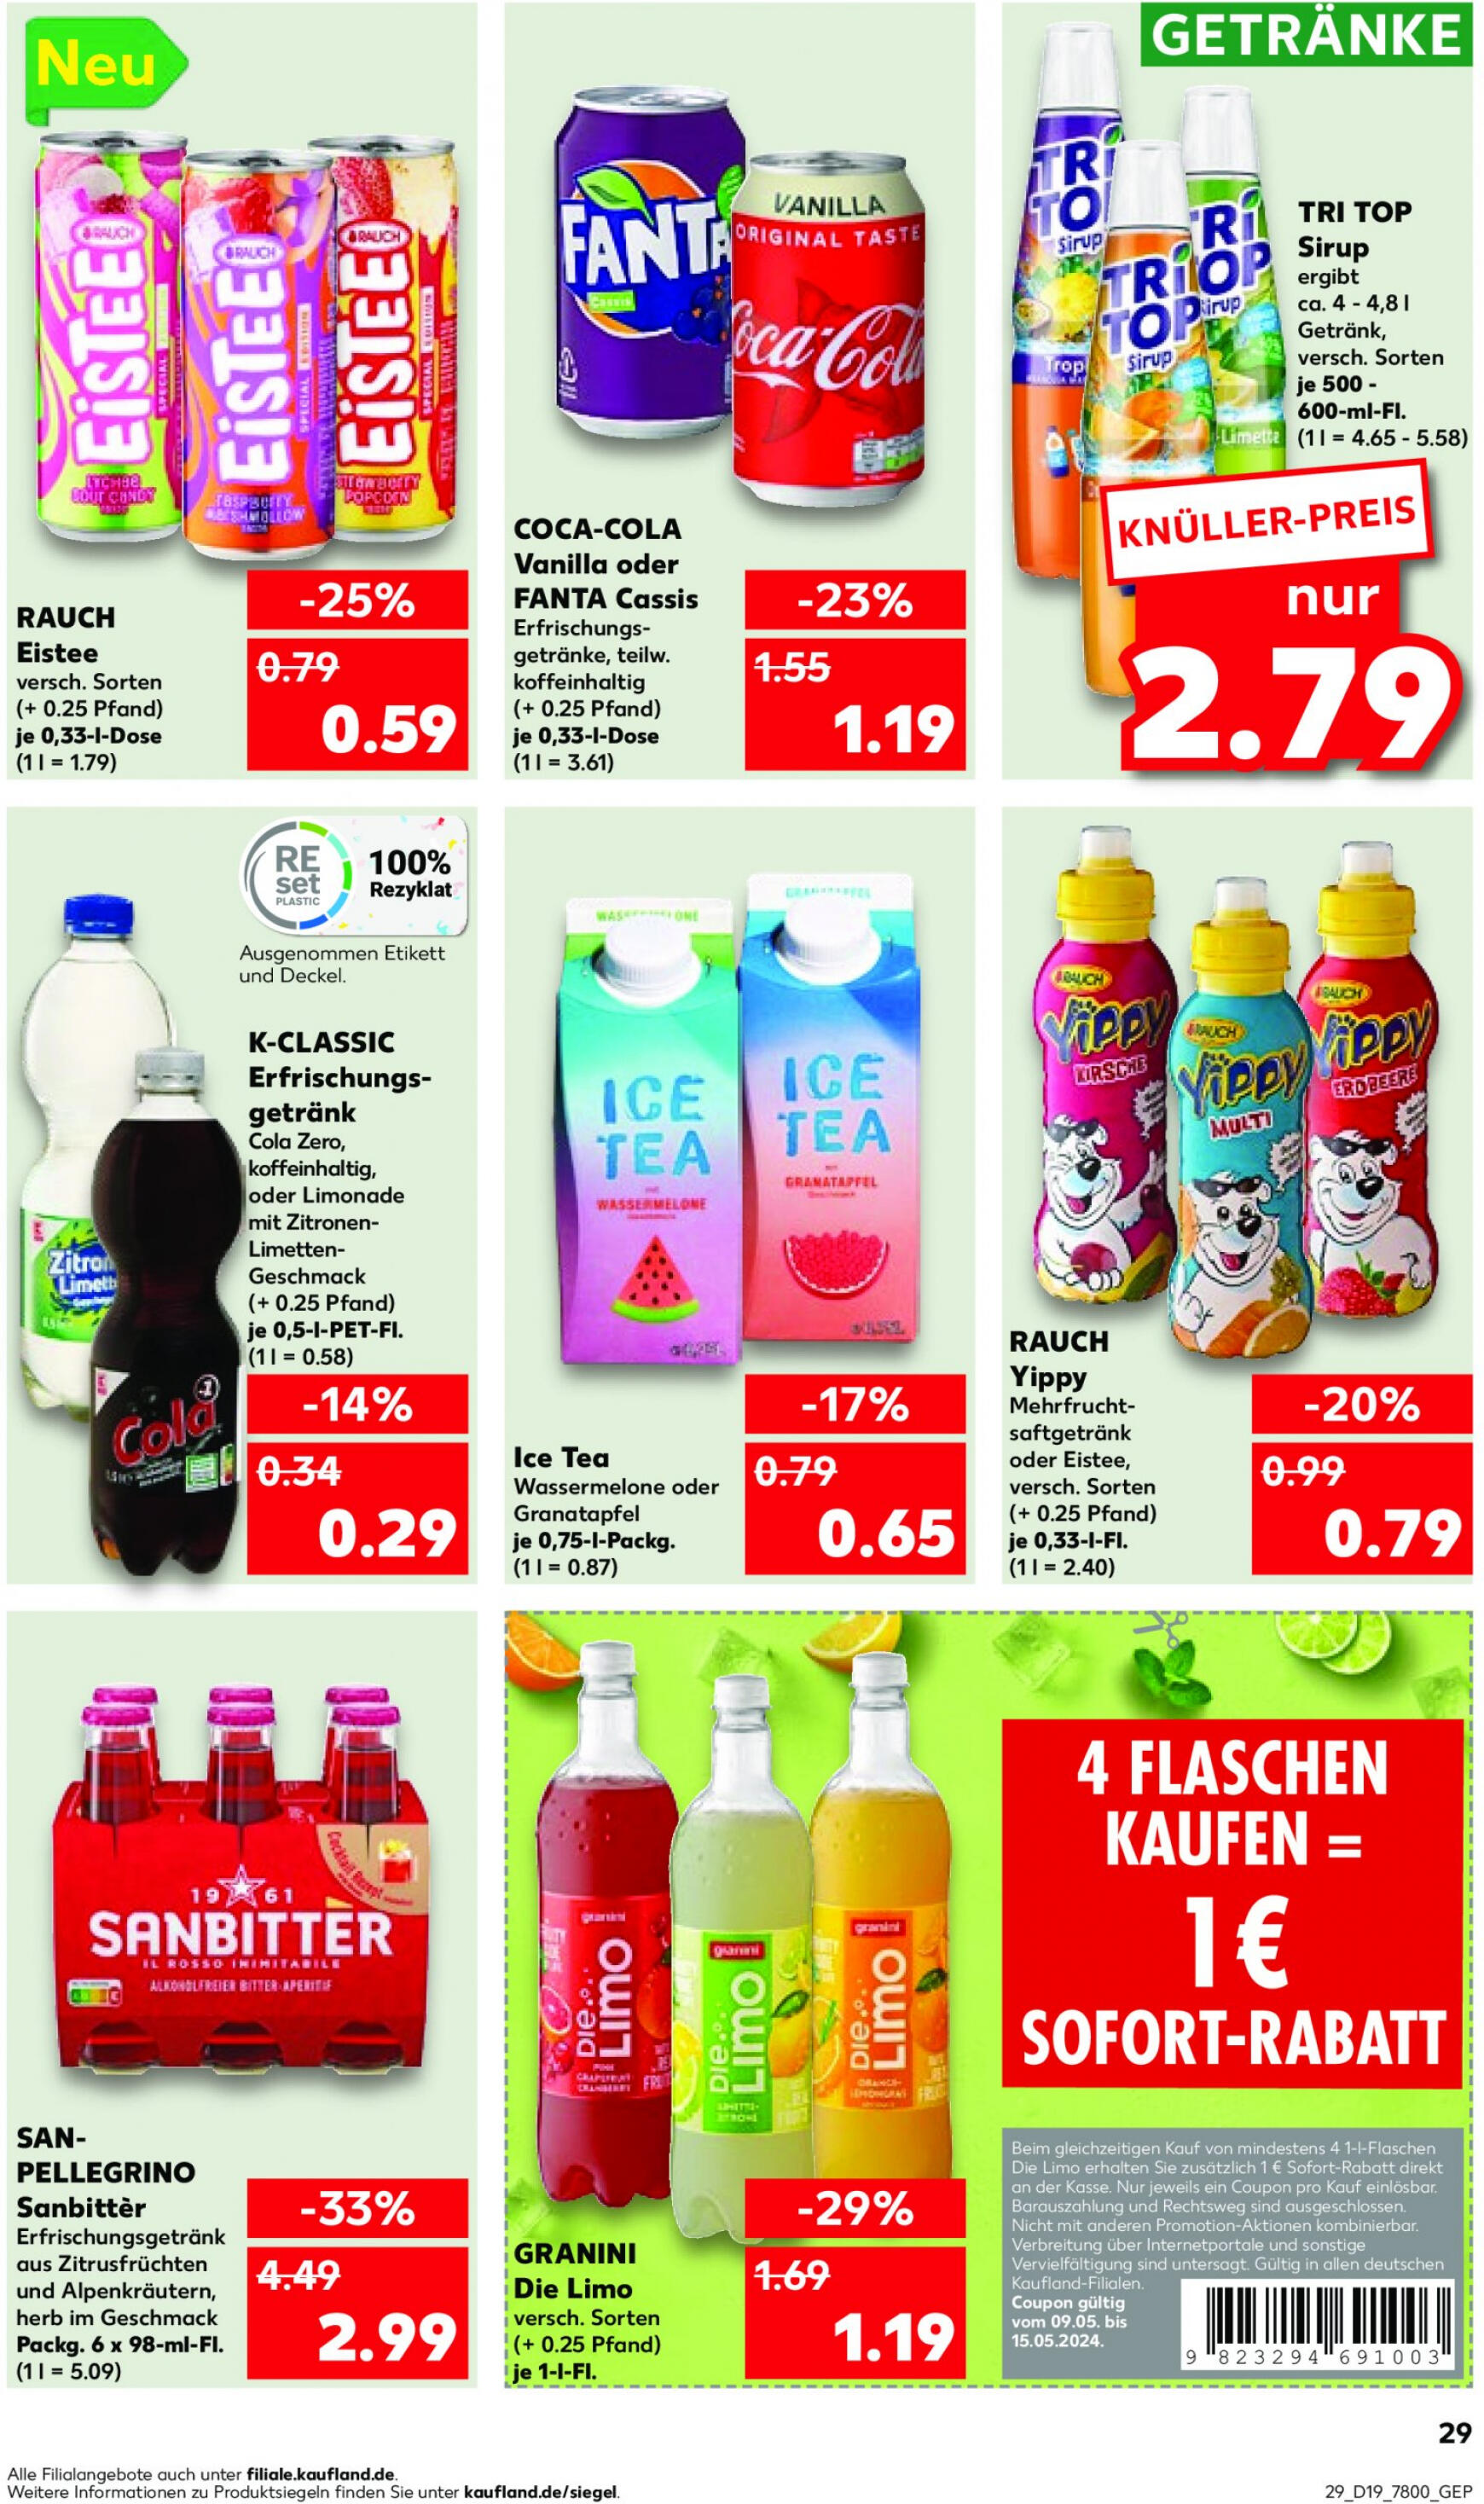 kaufland - Flyer Kaufland aktuell 10.05. - 15.05. - page: 29